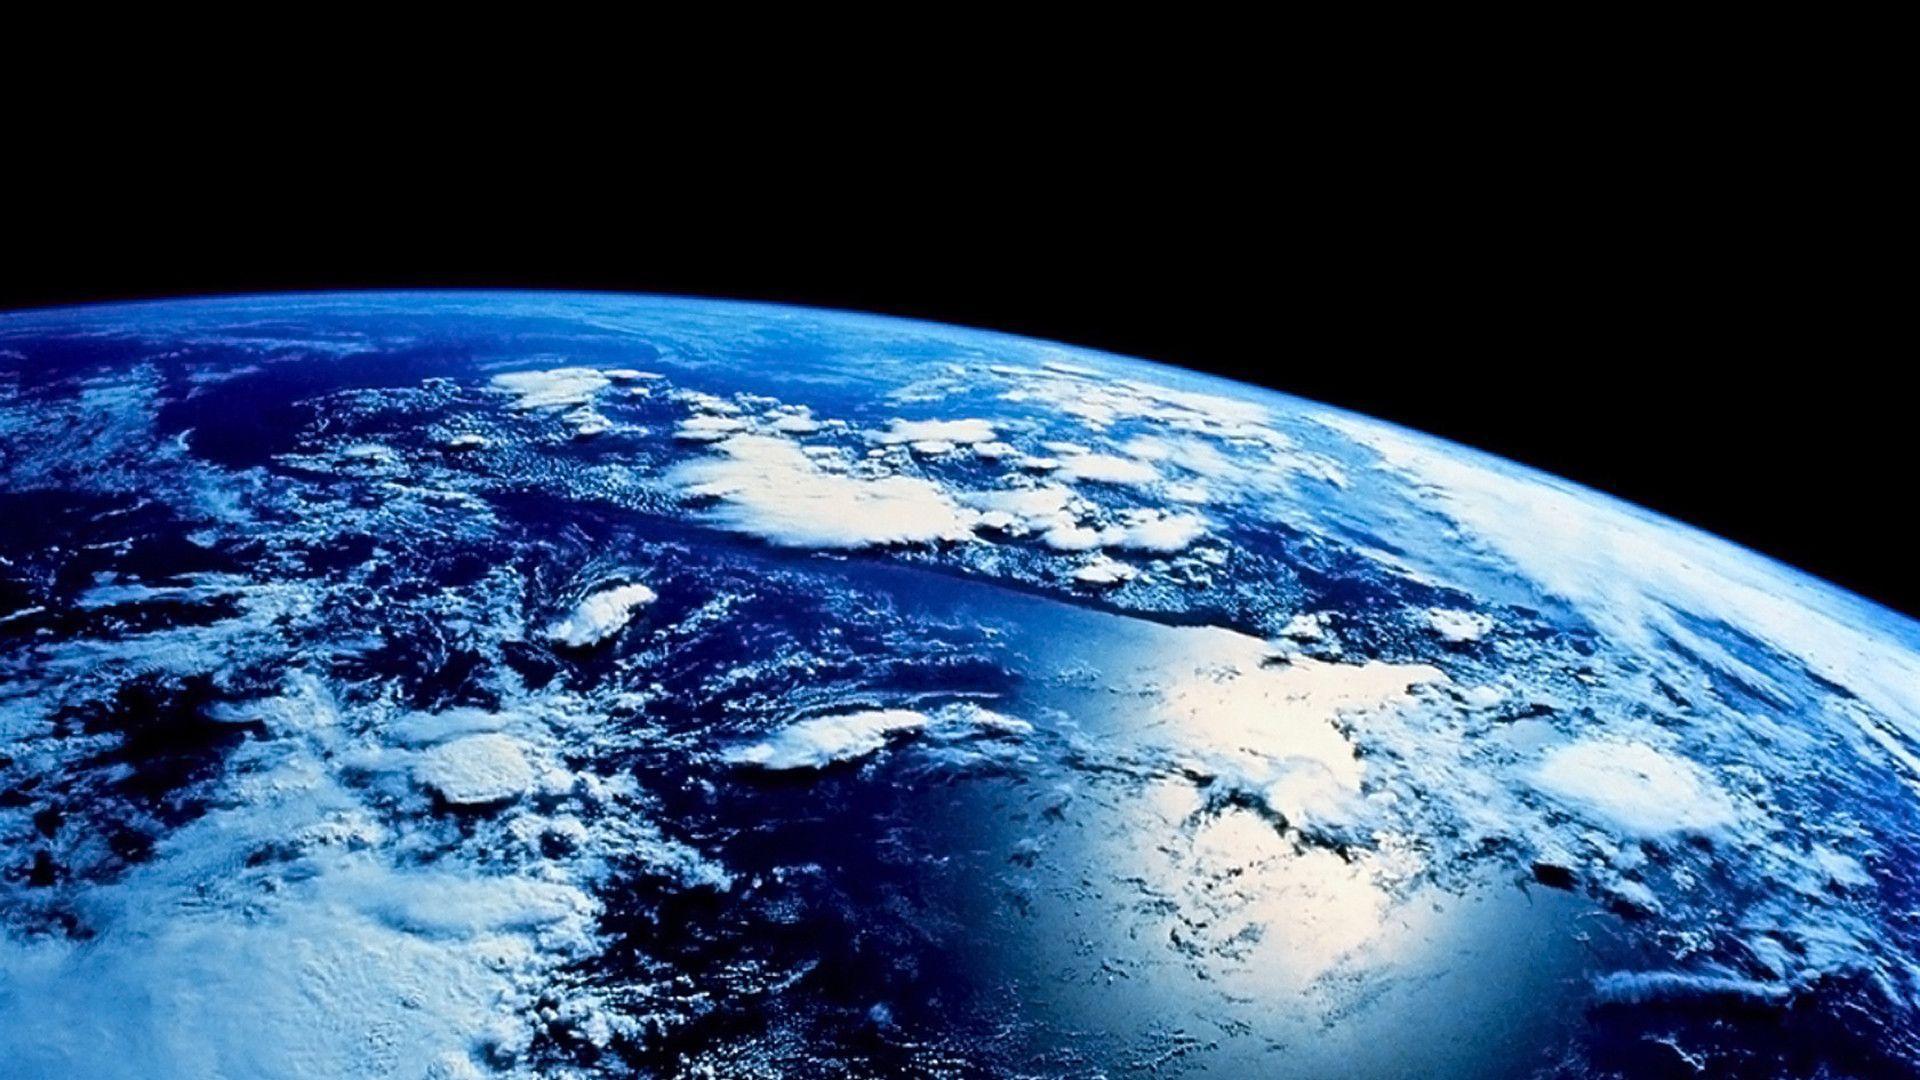 Mỗi khi bật máy tính, bạn sẽ được đón nhận một bức hình nền đầy ý nghĩa về hành tinh mà chúng ta sinh sống - Đất Trái đất. Bạn sẽ được ngắm nhìn những khoảnh khắc tuyệt vời, xem tầm nhìn từ không gian vào hành tinh mà mình đang sống. Hãy tô điểm cho màn hình máy tính của bạn bằng một hình nền đẹp nhất của Đất Trái đất.